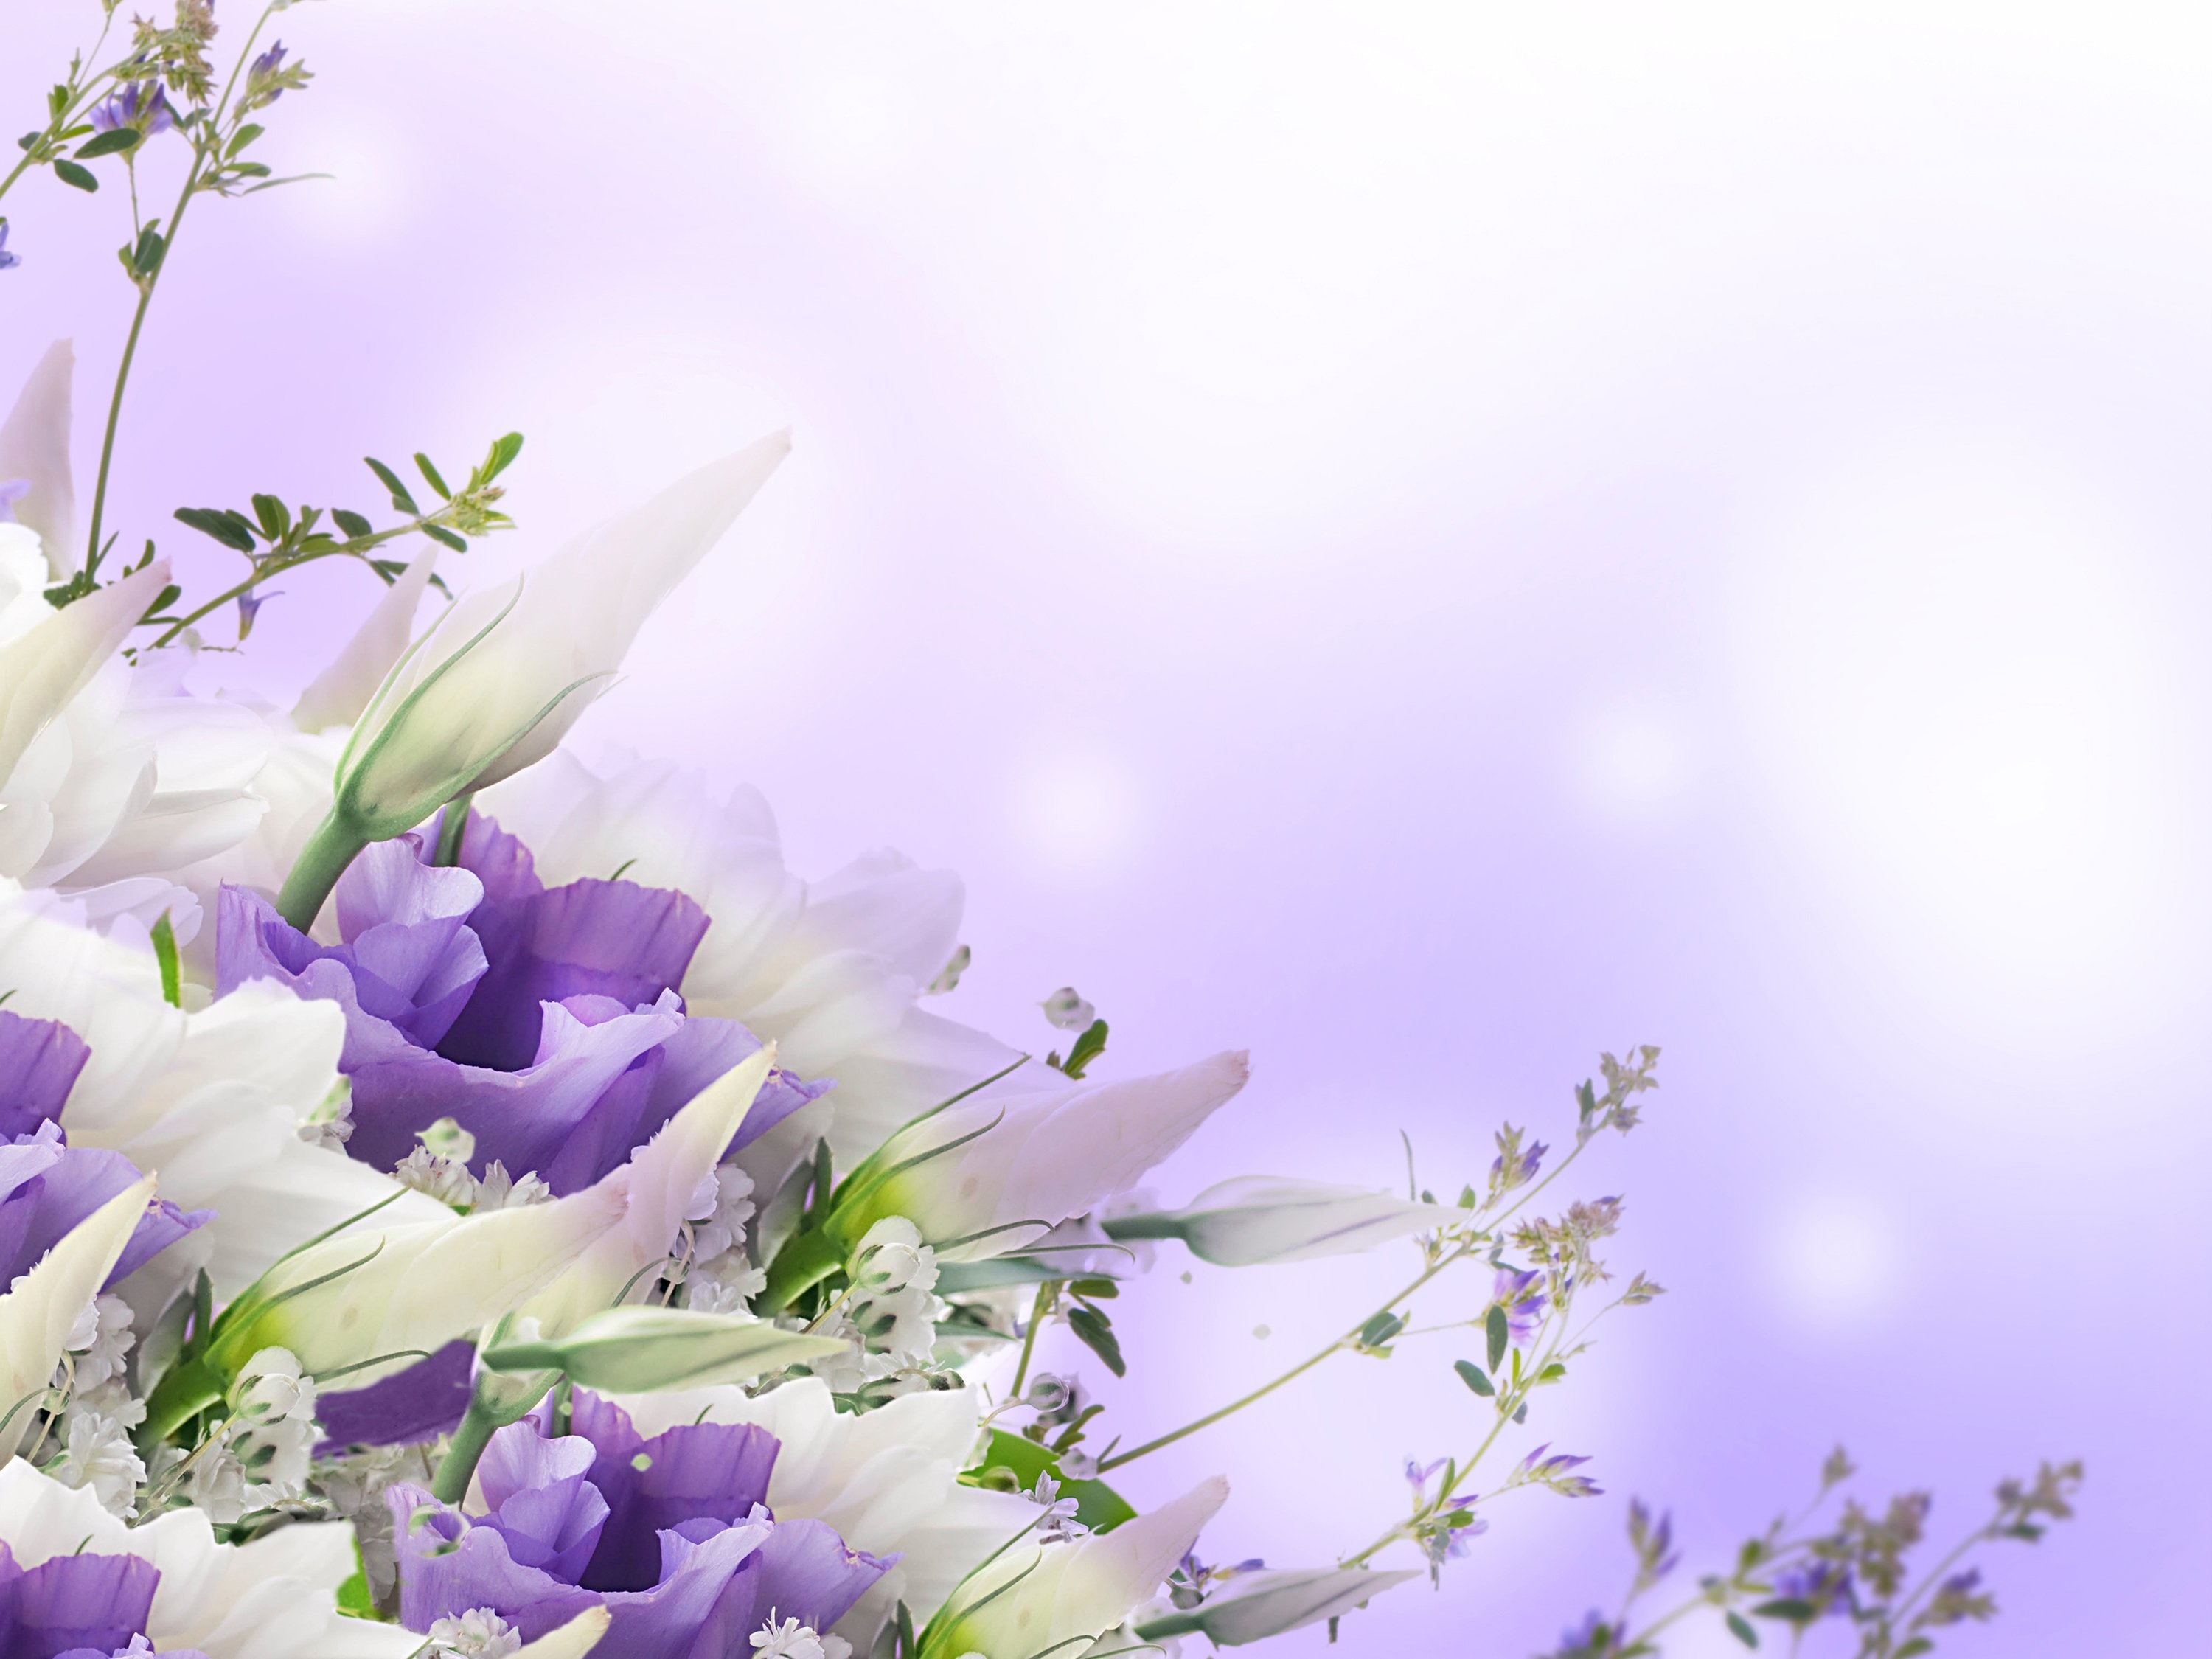 Тюльпаны под дождем рамки для текста фото поздравления скачать картинки онлайн шаблон